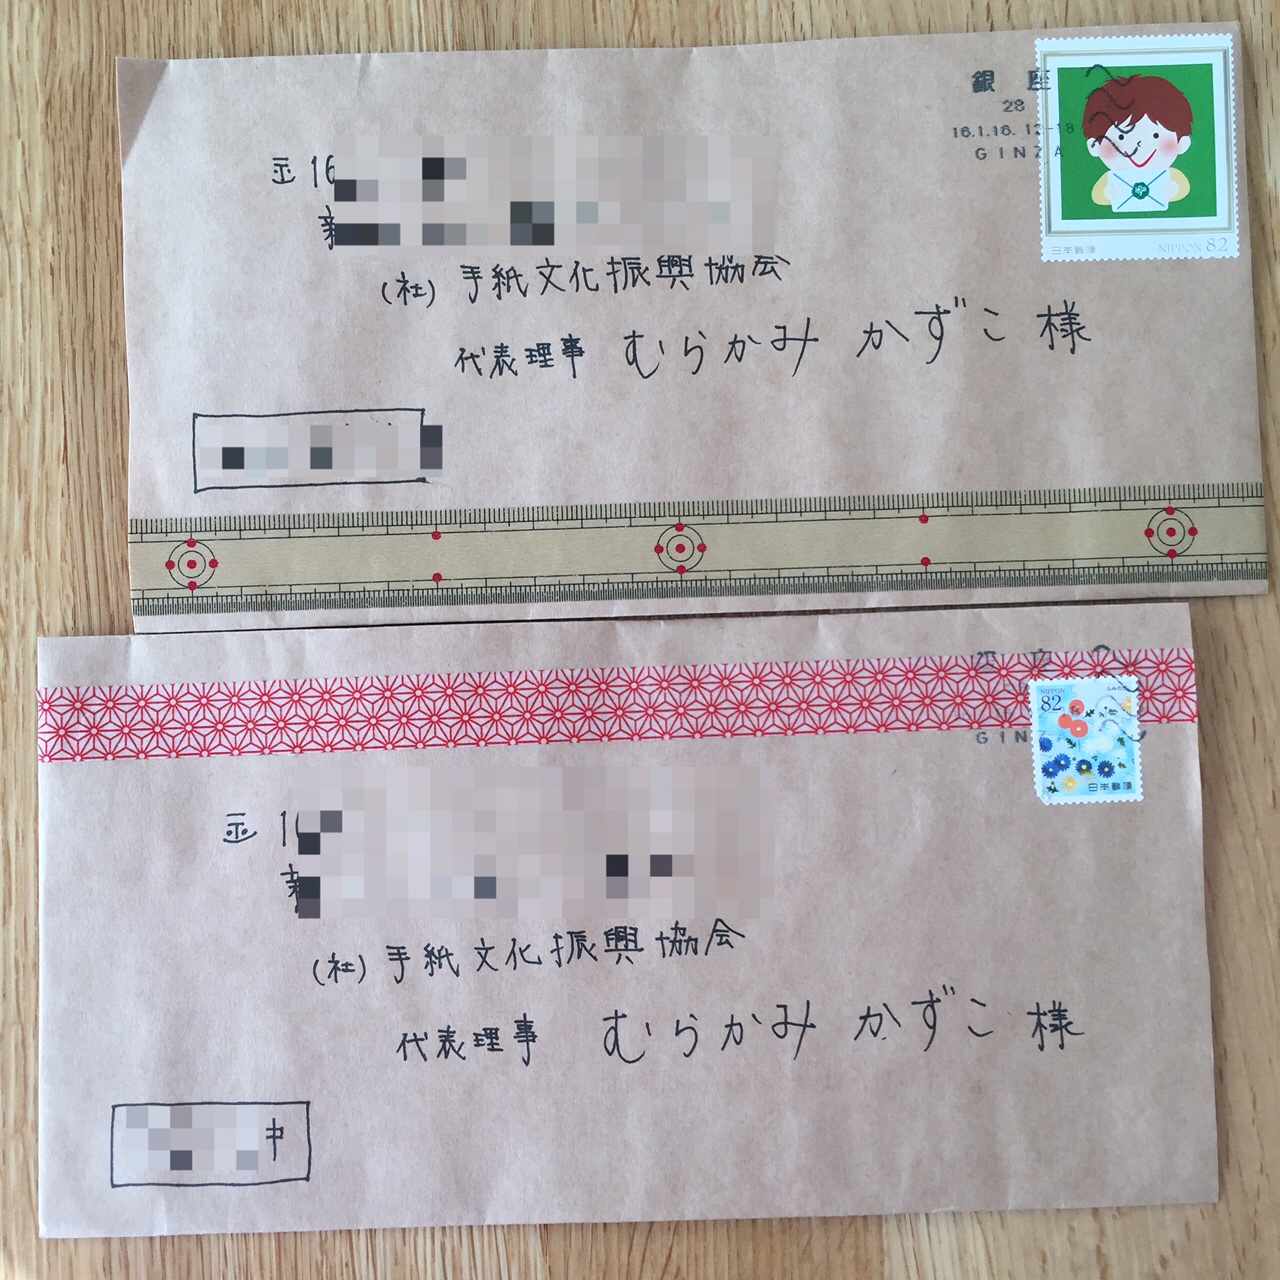 京都の文香 切手いろいろ保管法 マステでオリジナルの封筒に 通信講座のテキスト プレジデントアカデミー社のセミナーに登壇します むらかみかずこのほんのり楽しむ手紙時間